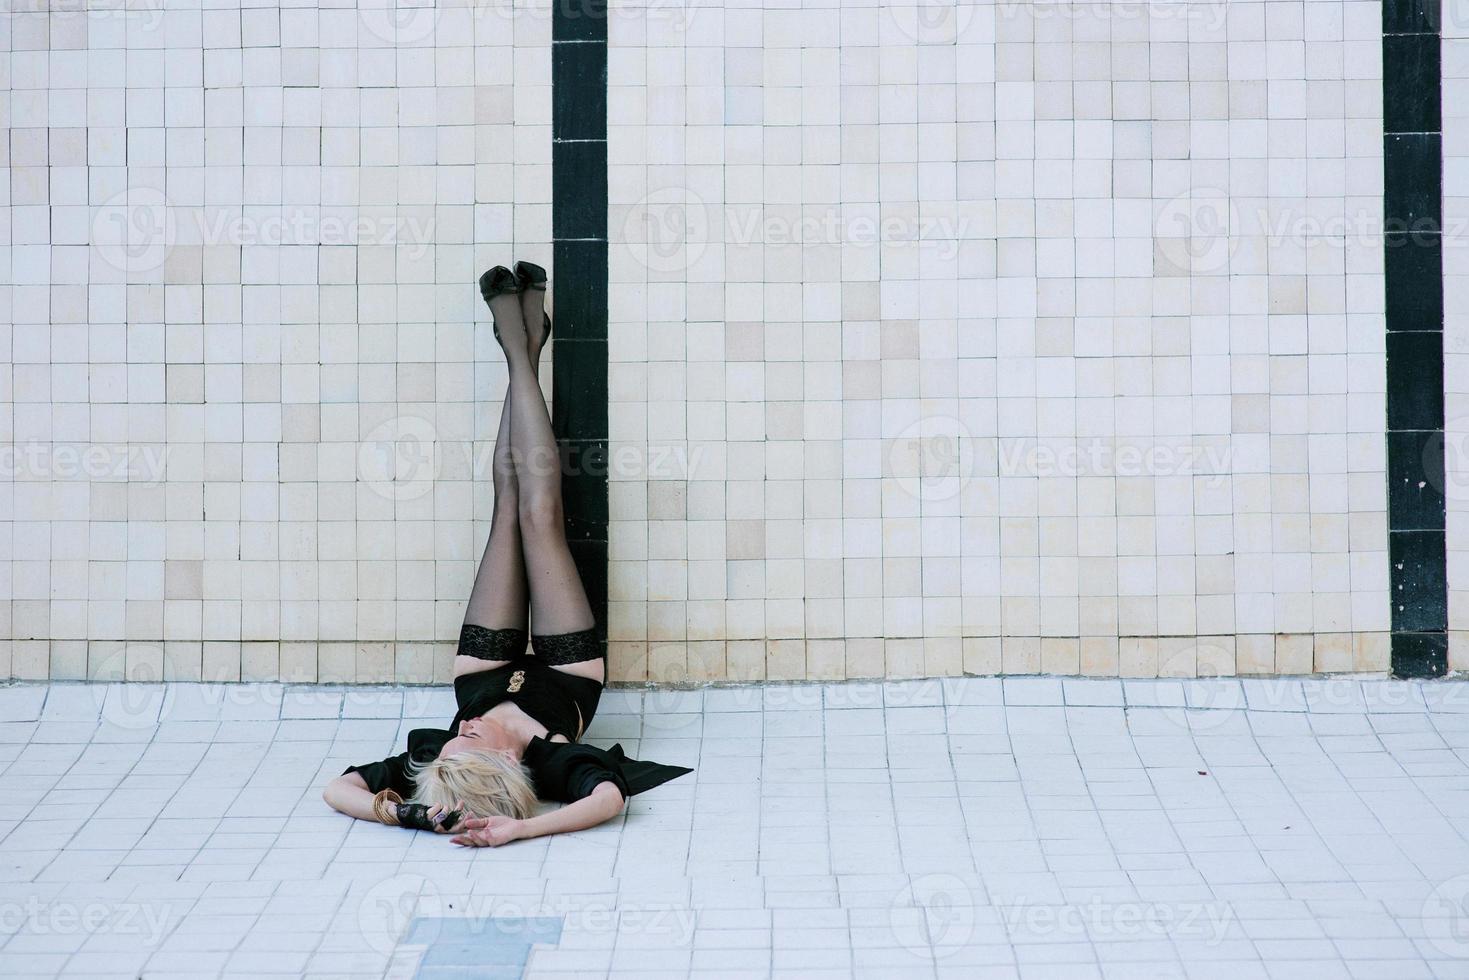 jeune femme en sous-vêtements noirs et bas seuls dans la piscine vide photo